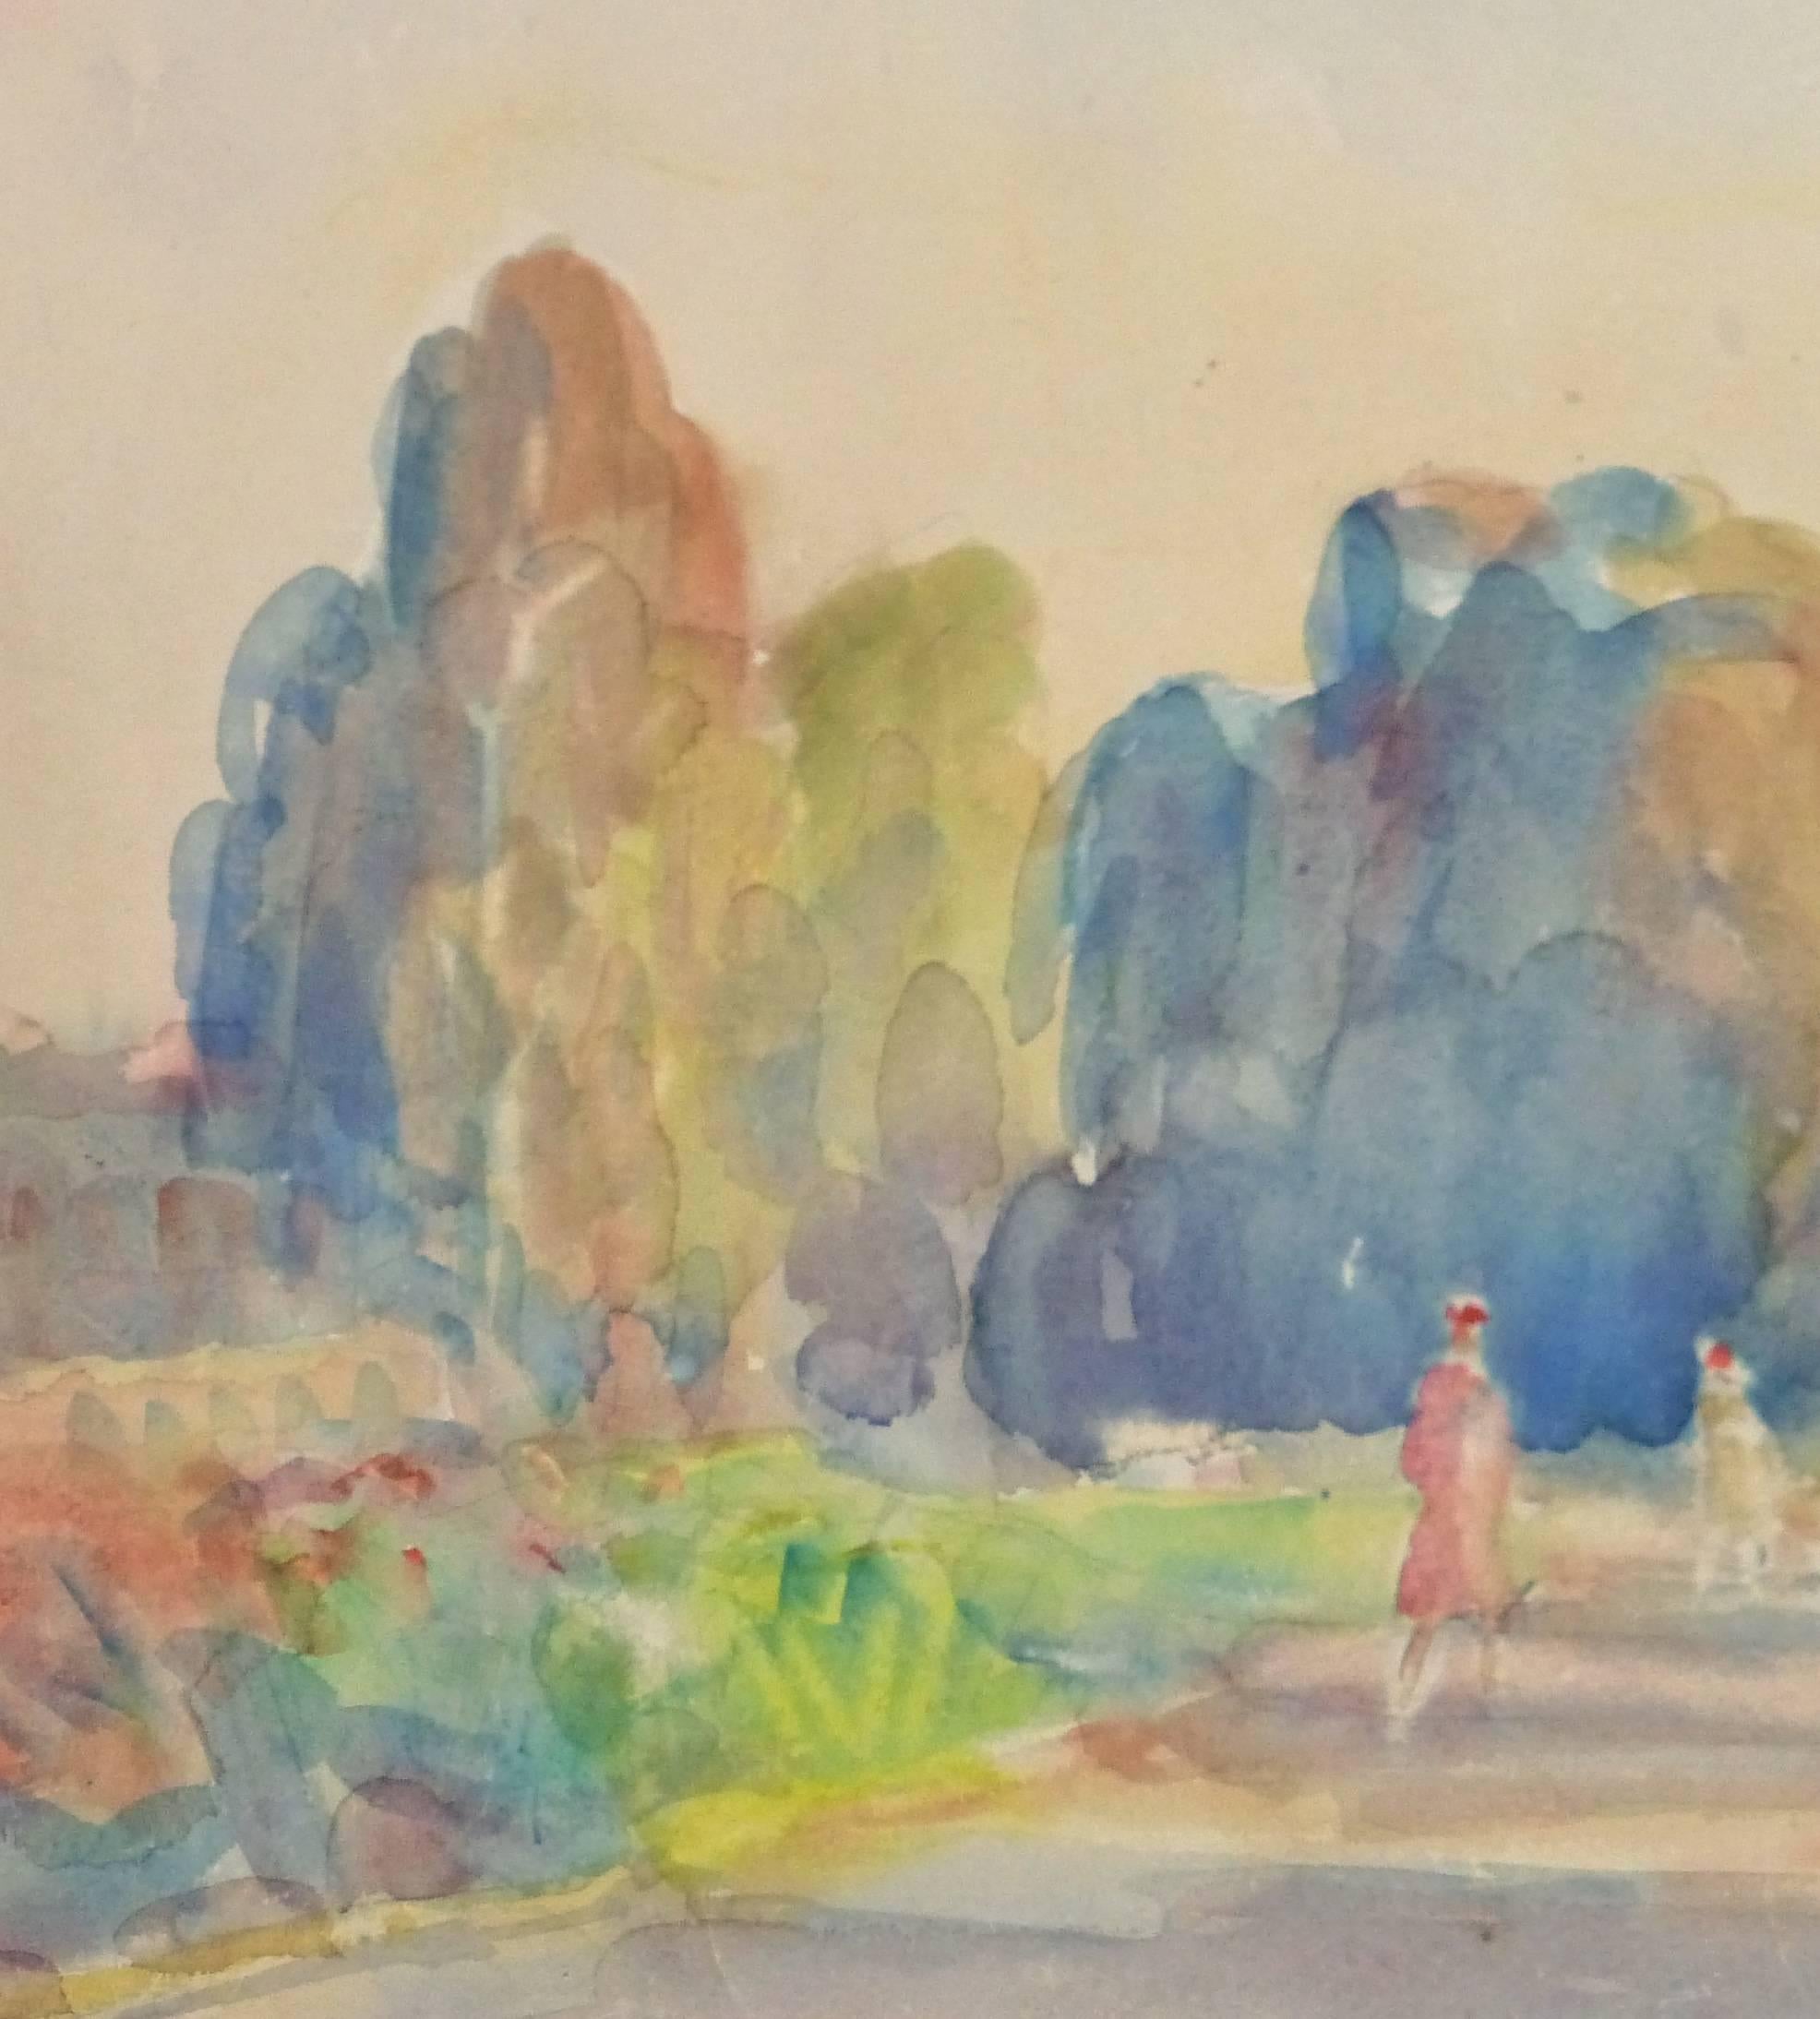 Vintage Watercolor Landscape - Pastel-Toned Walk in the Park at Dusk - Art by Alfred Rössler